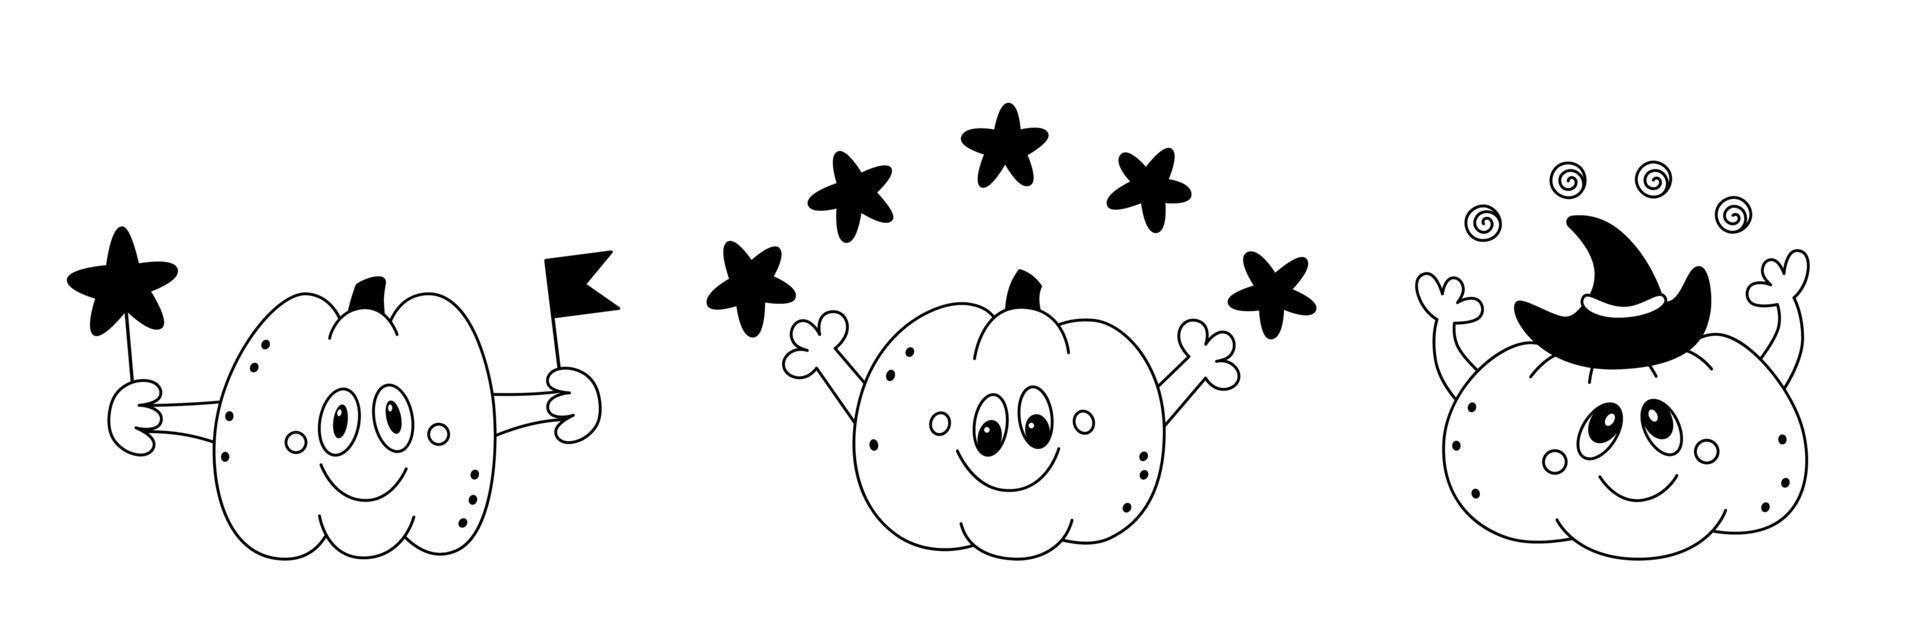 Gekritzelsatz glückliche Kürbiskinder der Karikatur festliche Gestaltungselemente für Halloween-Entwurfsskizze vektor